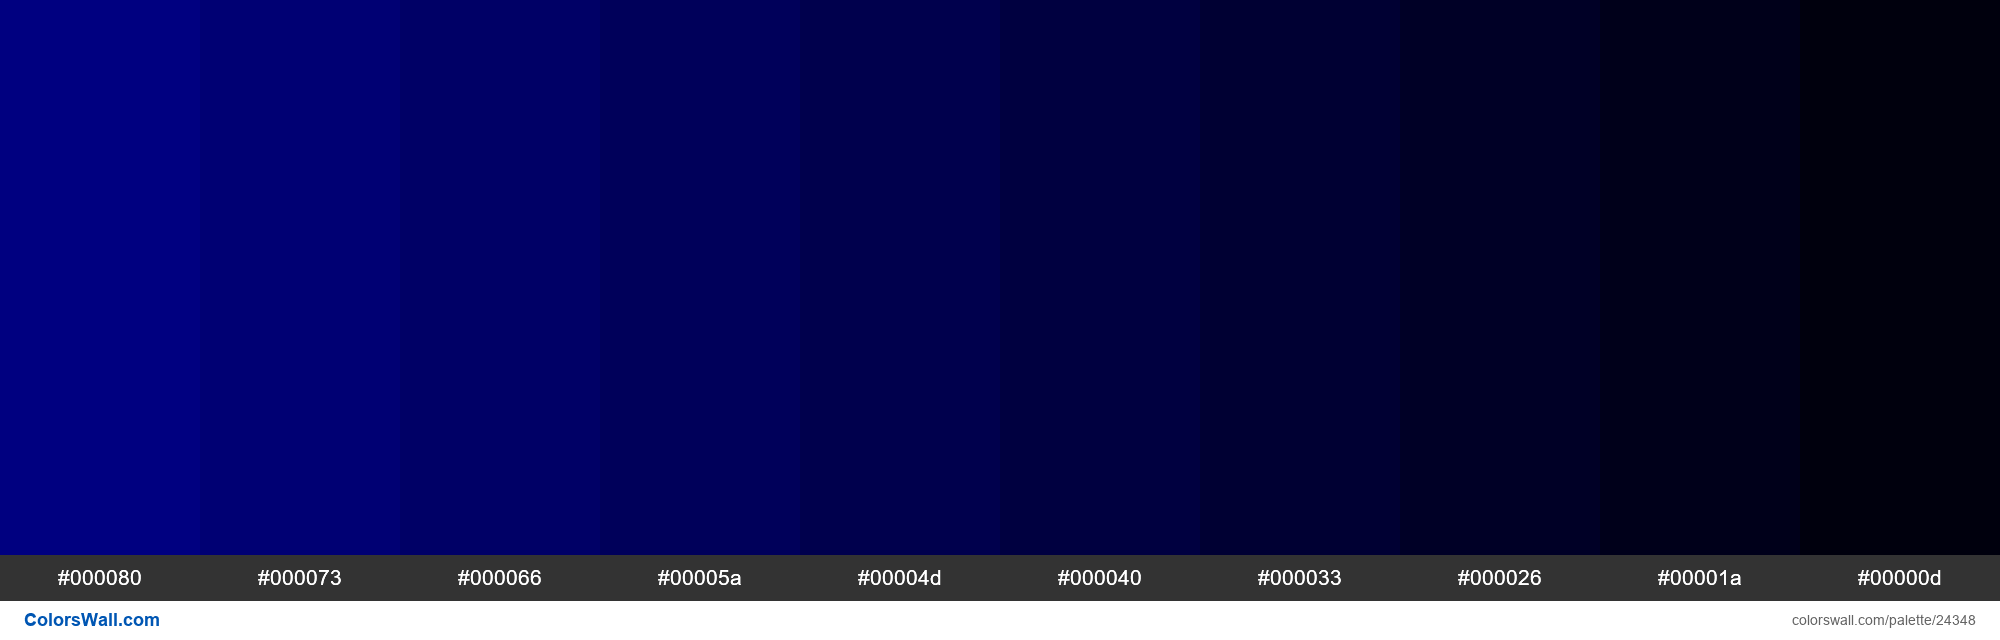 colorswall on X: Shades of Espresso color #4E312D hex #4e312d